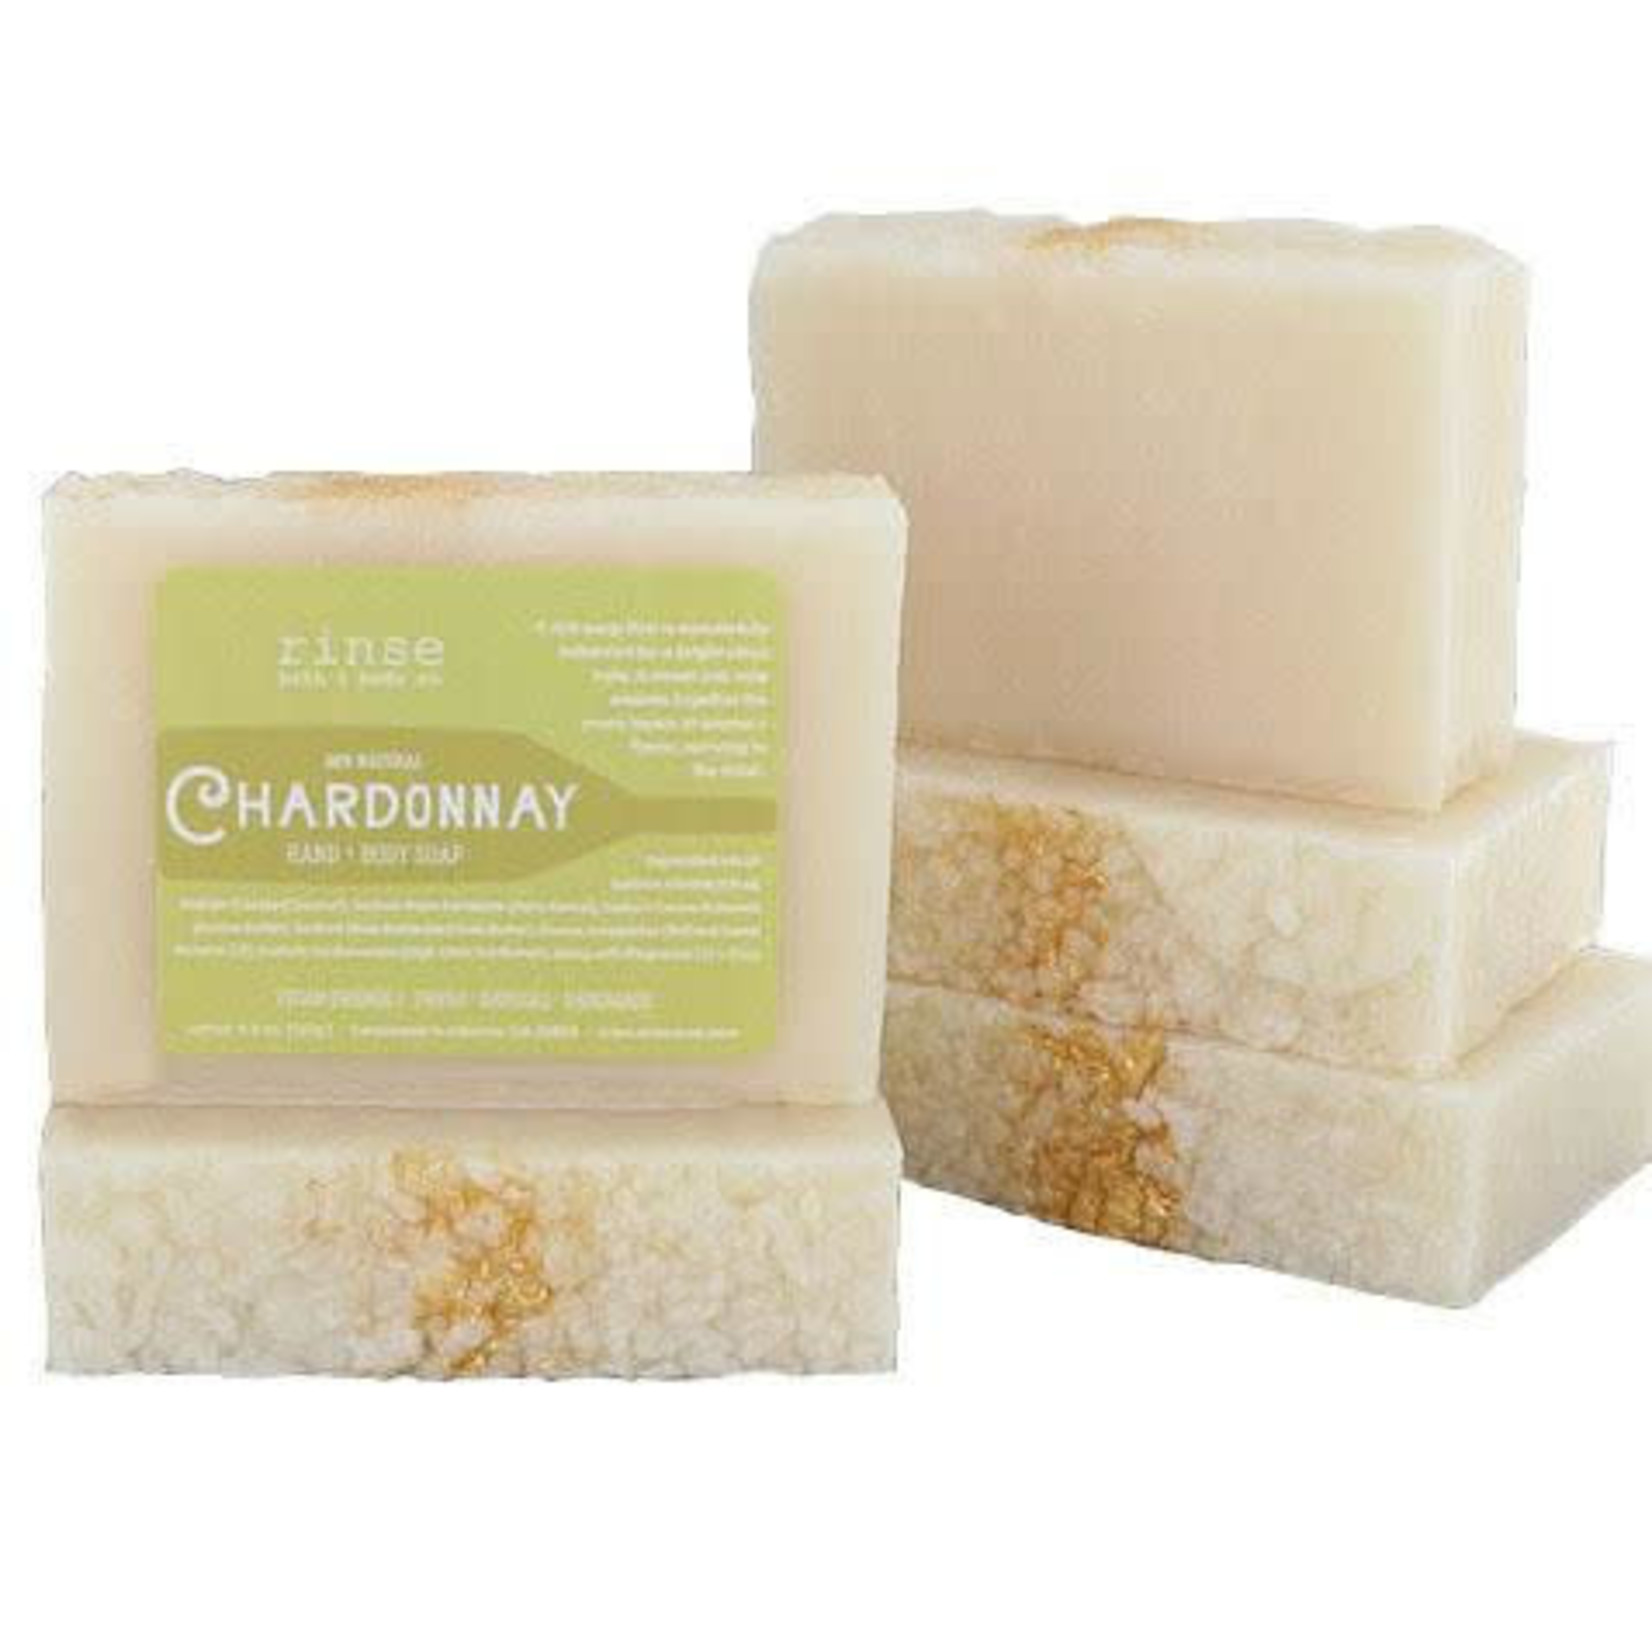 Rinse Bath & Body Chardonnay Hand & Body Soap